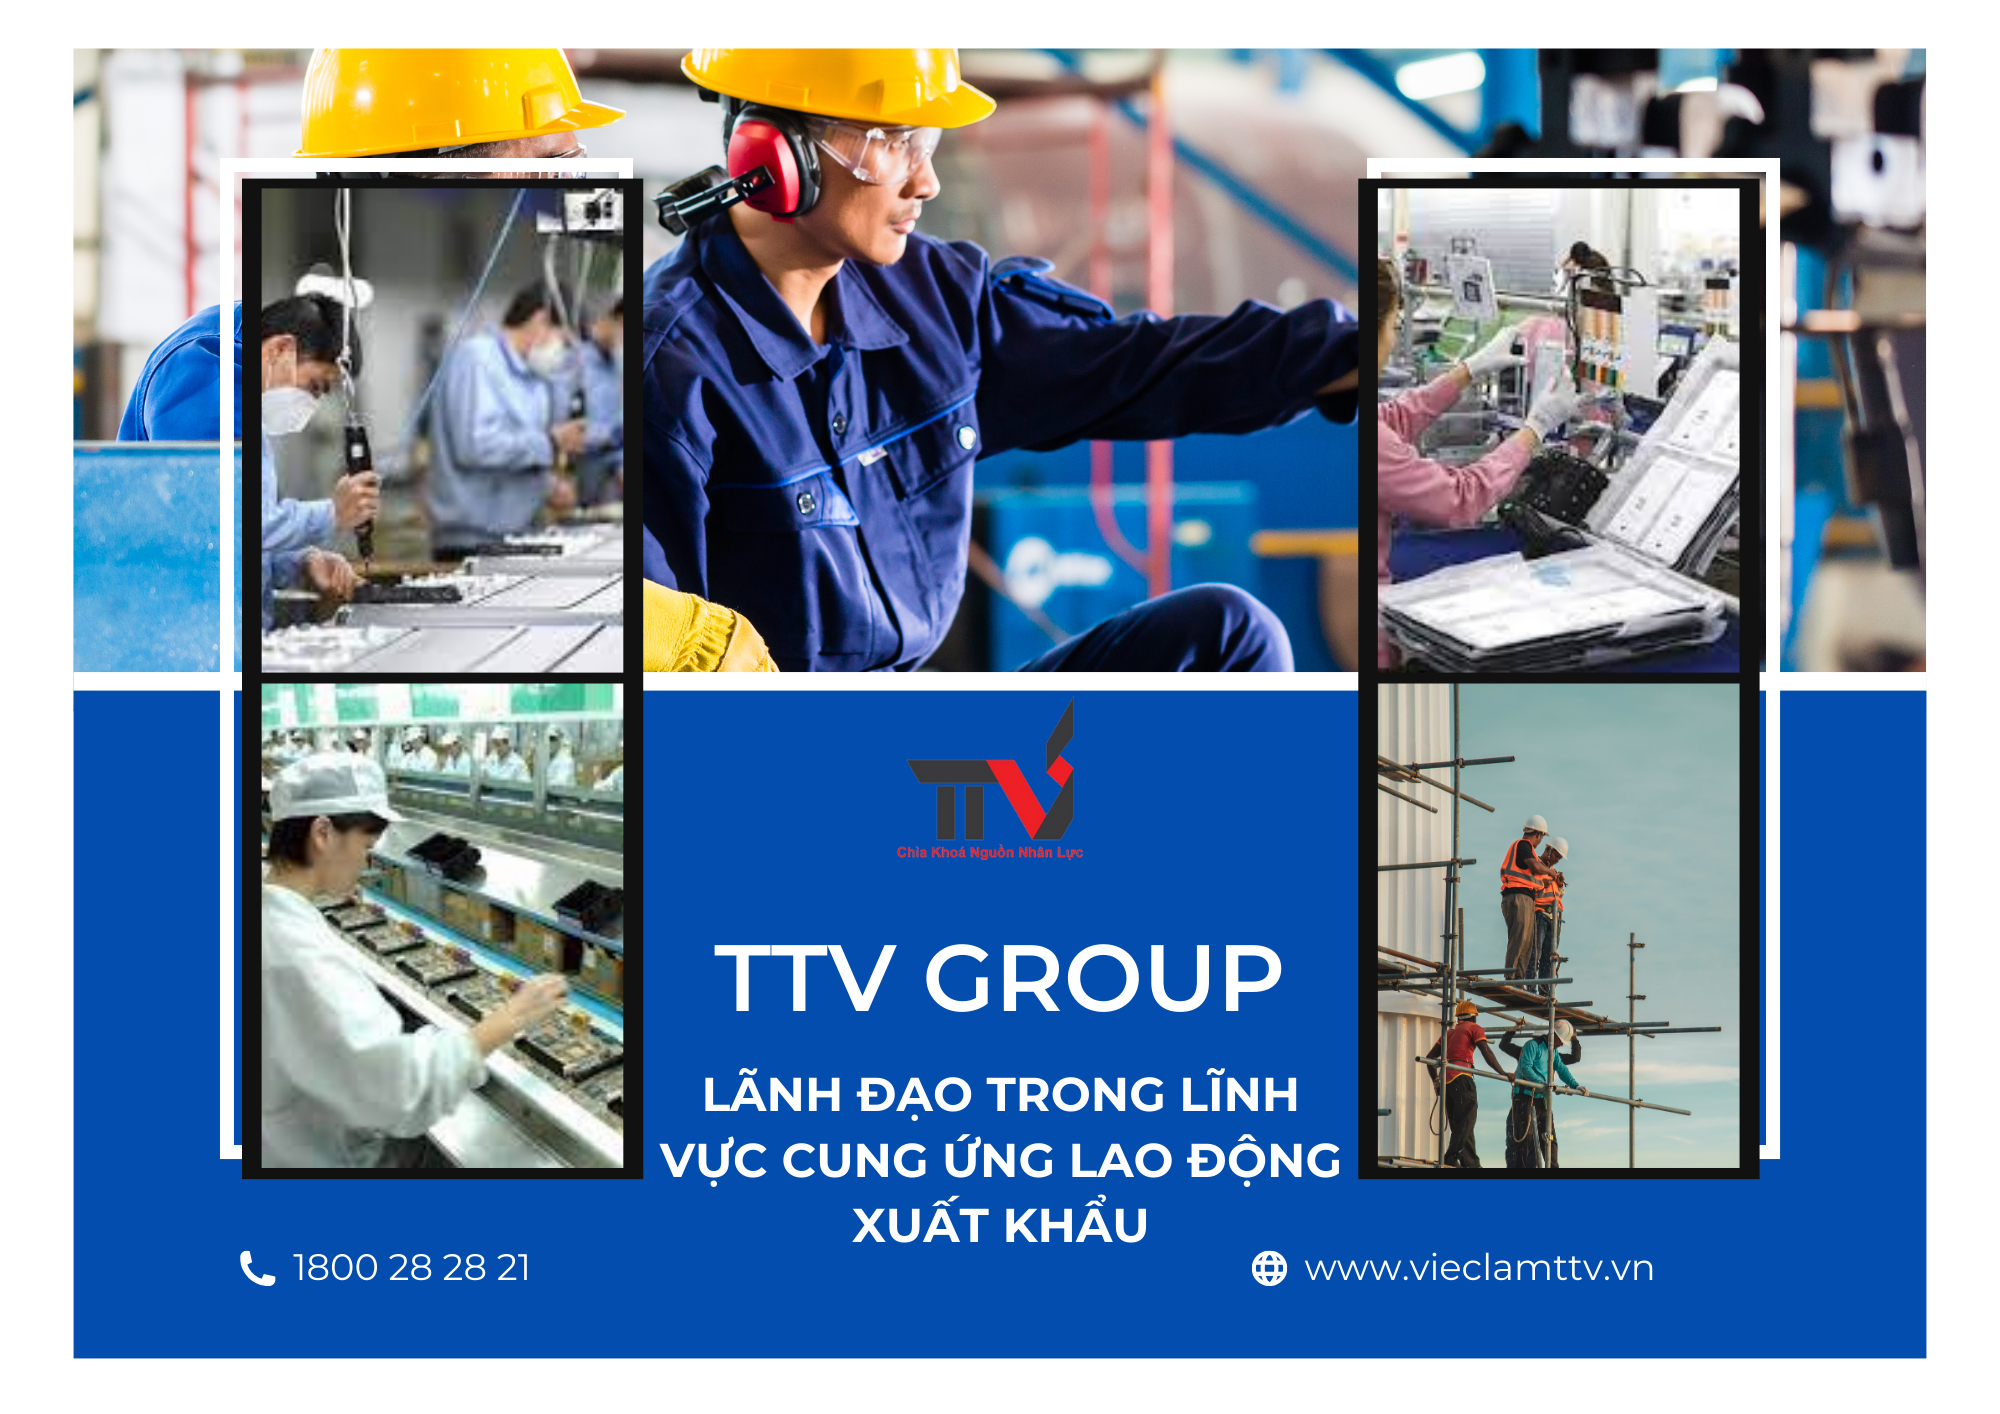 TTV Group: Lãnh Đạo Trong Lĩnh Vực Cung Ứng Lao Động Xuất Khẩu tại Khu Vực Hồ Chí Minh, Bình Dương và Đồng Nai